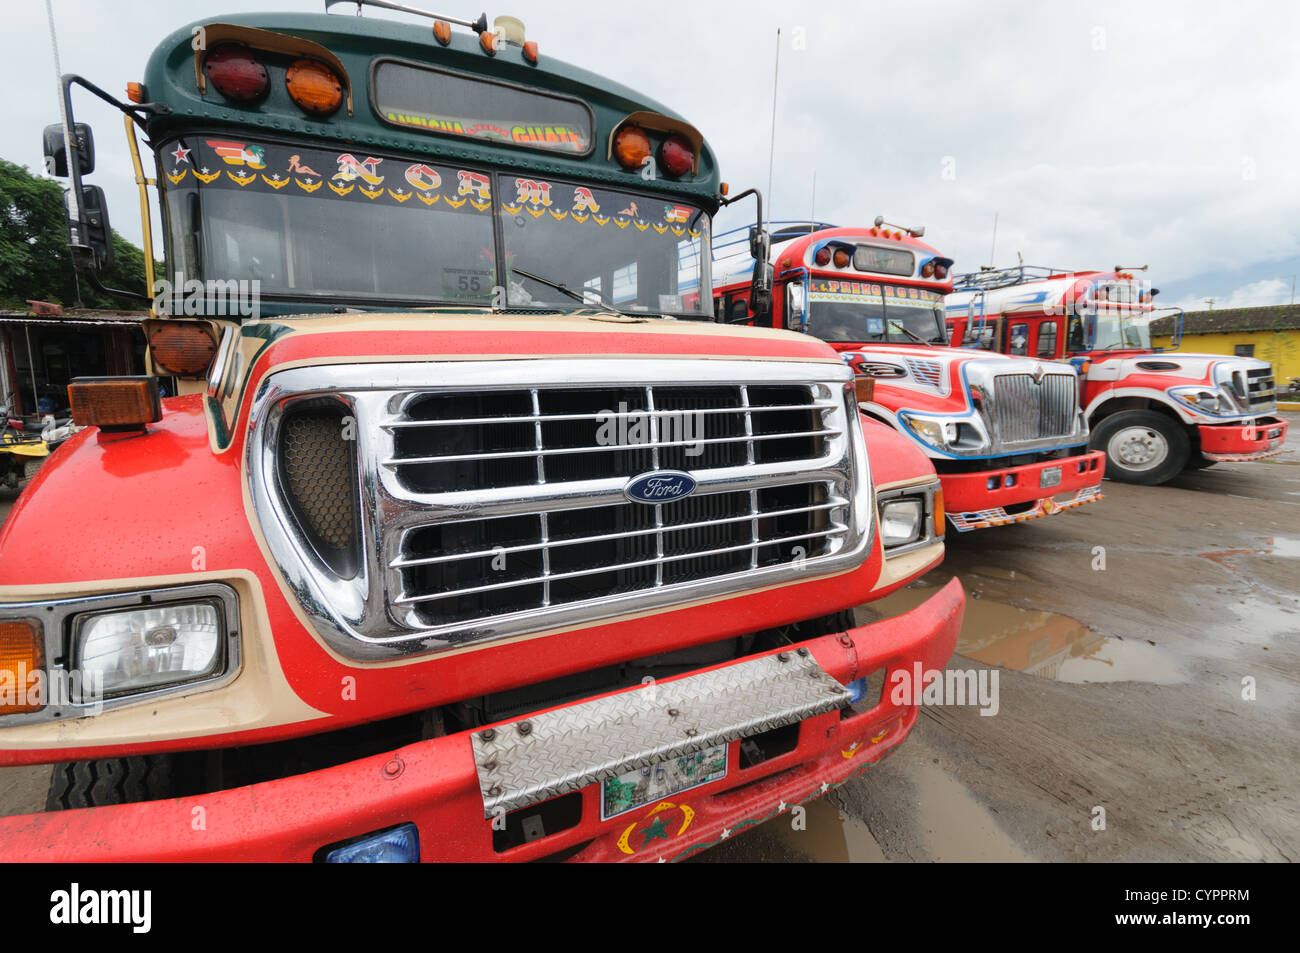 Fronten von Huhn Busse hinter dem Mercado Municipal (Stadtmarkt) in Antigua, Guatemala. Aus diesem umfangreichen zentralen Busbahnhof strahlenförmig der Routen in Guatemala. Oft bunt bemalt, die Huhn-Busse sind nachgerüsteten amerikanische Schulbusse und bieten ein günstiges Transportmittel im ganzen Land. Stockfoto